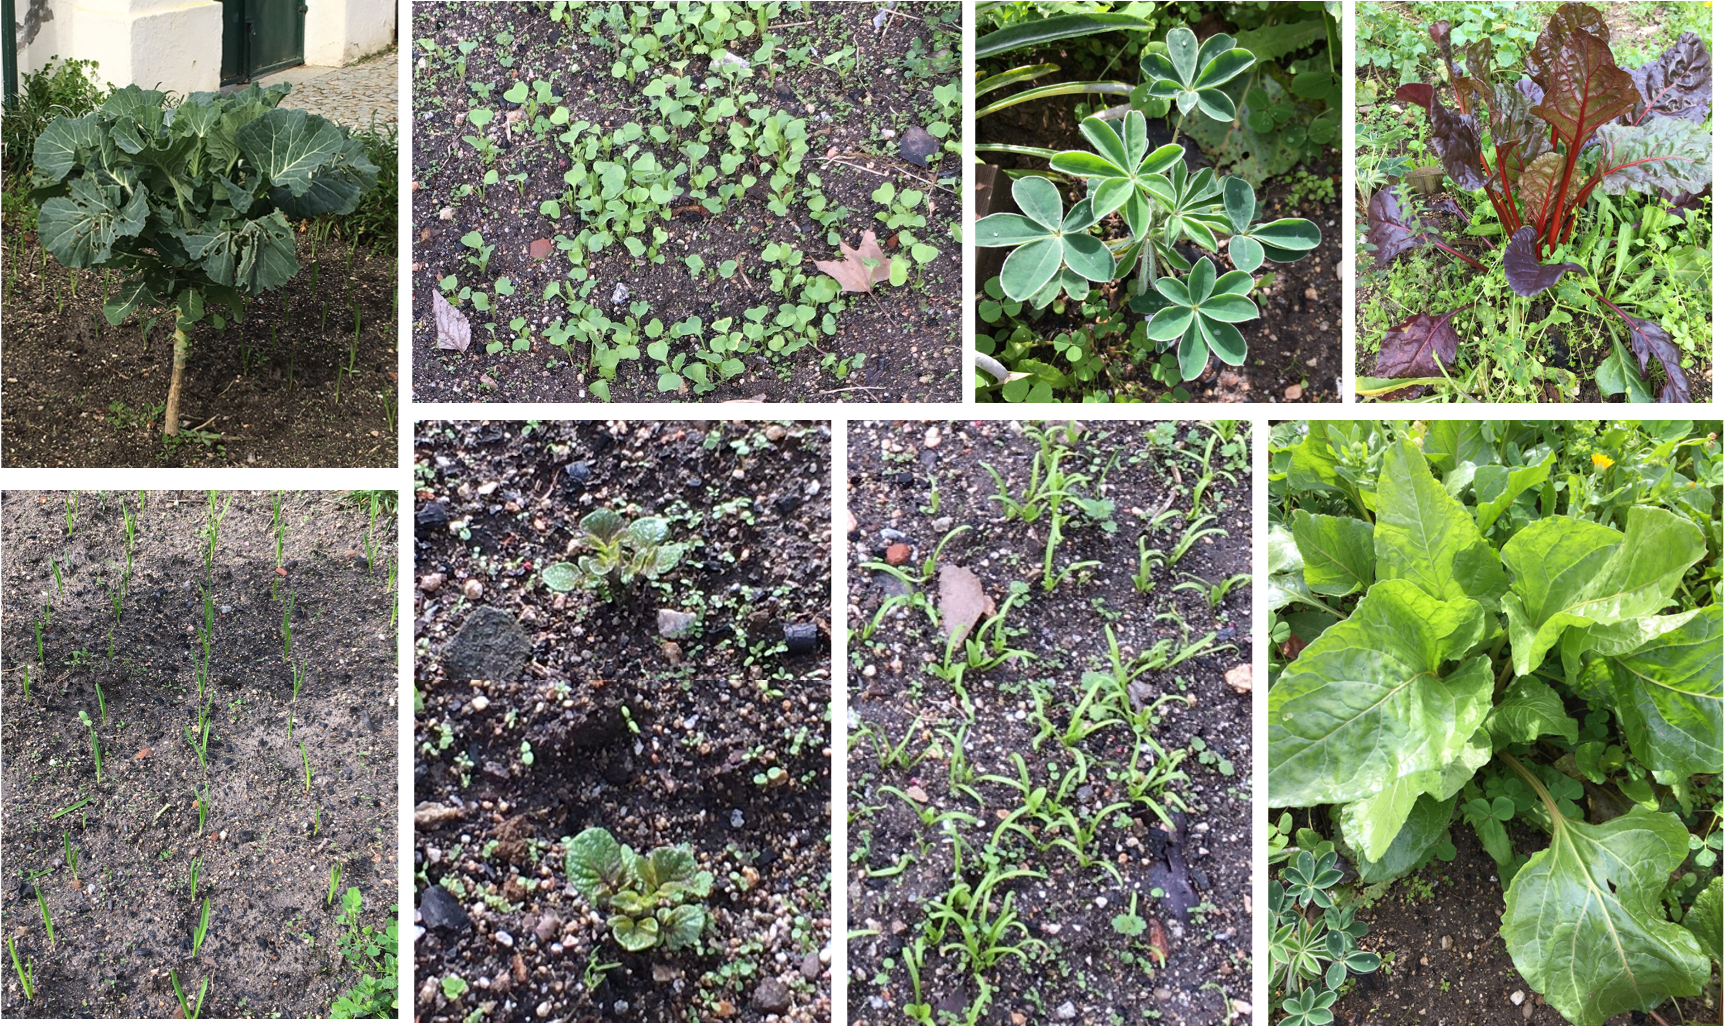 No fim de janeiro, as culturas da nossa horta estão assim: couves, tremoceiros, rabanetes, beterrabas, alhos, batatas, espinafres e acelgas.